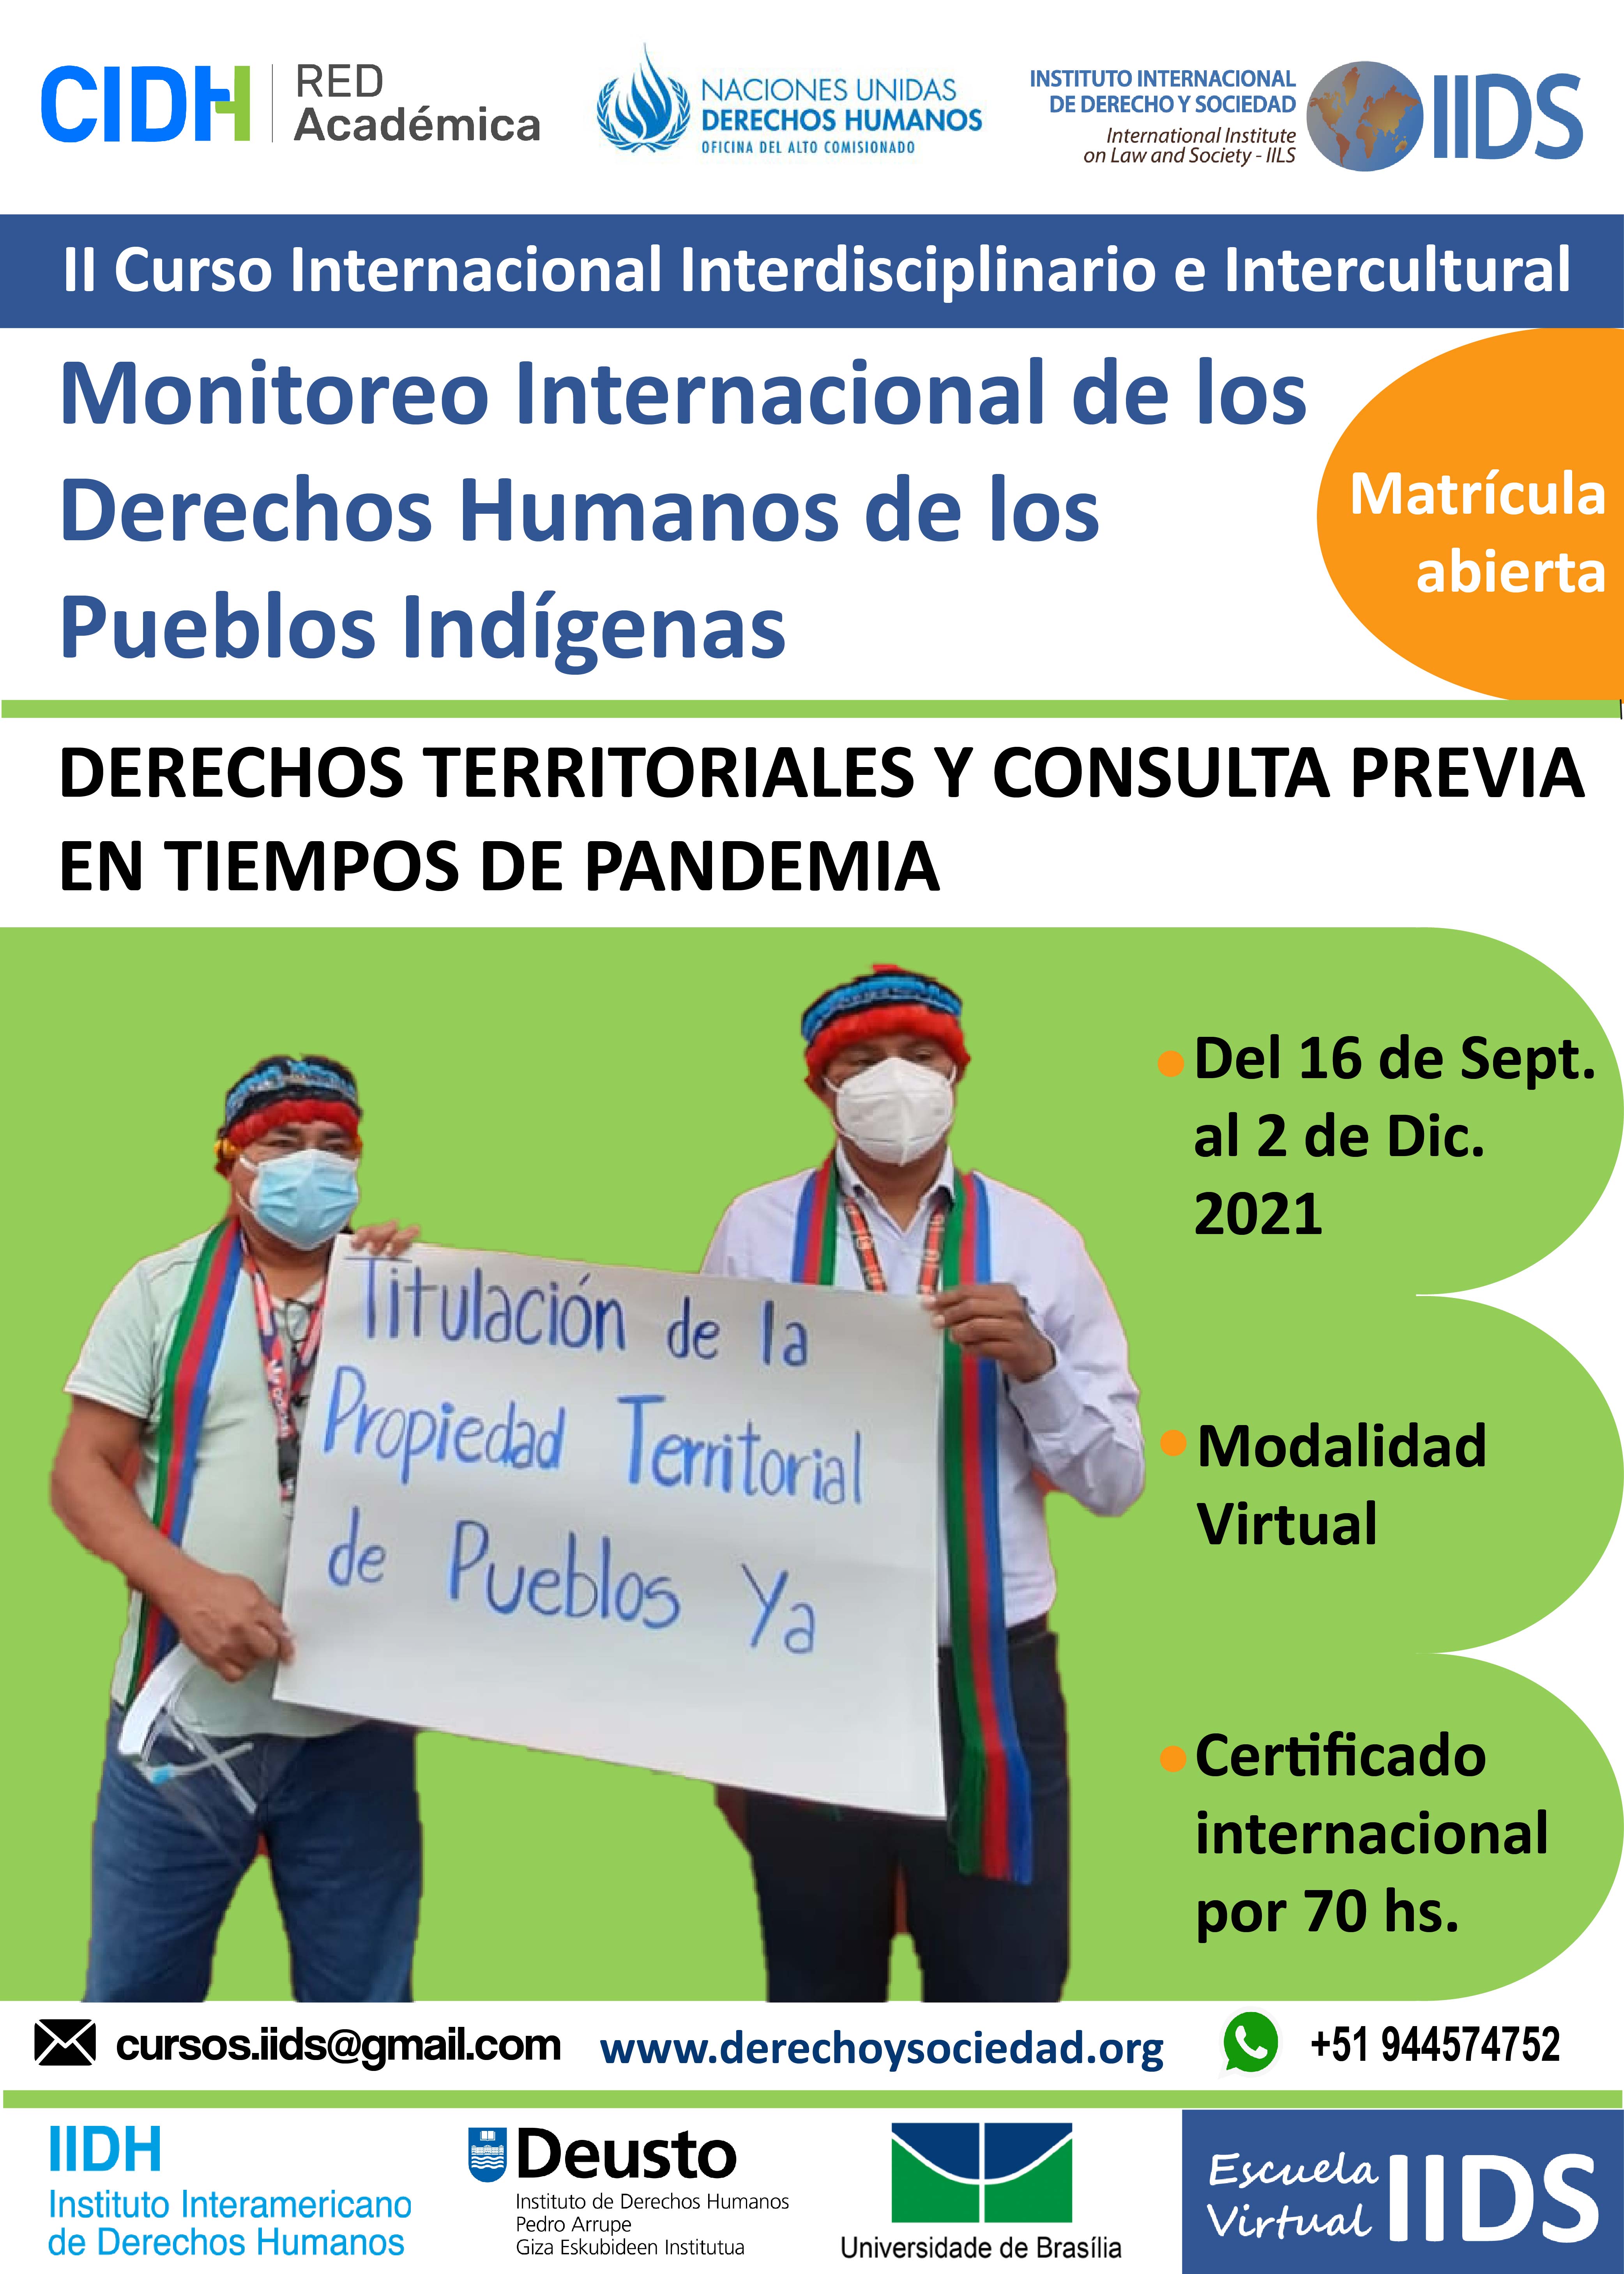 II Curso Internacional Interdisciplinario e Intercultural MONITOREO INTERNACIONAL DE LOS DERECHOS HUMANOS DE LOS PUEBLOS INDÍGENAS, Derechos territoriales y Consulta Previa, en tiempos de pandemia